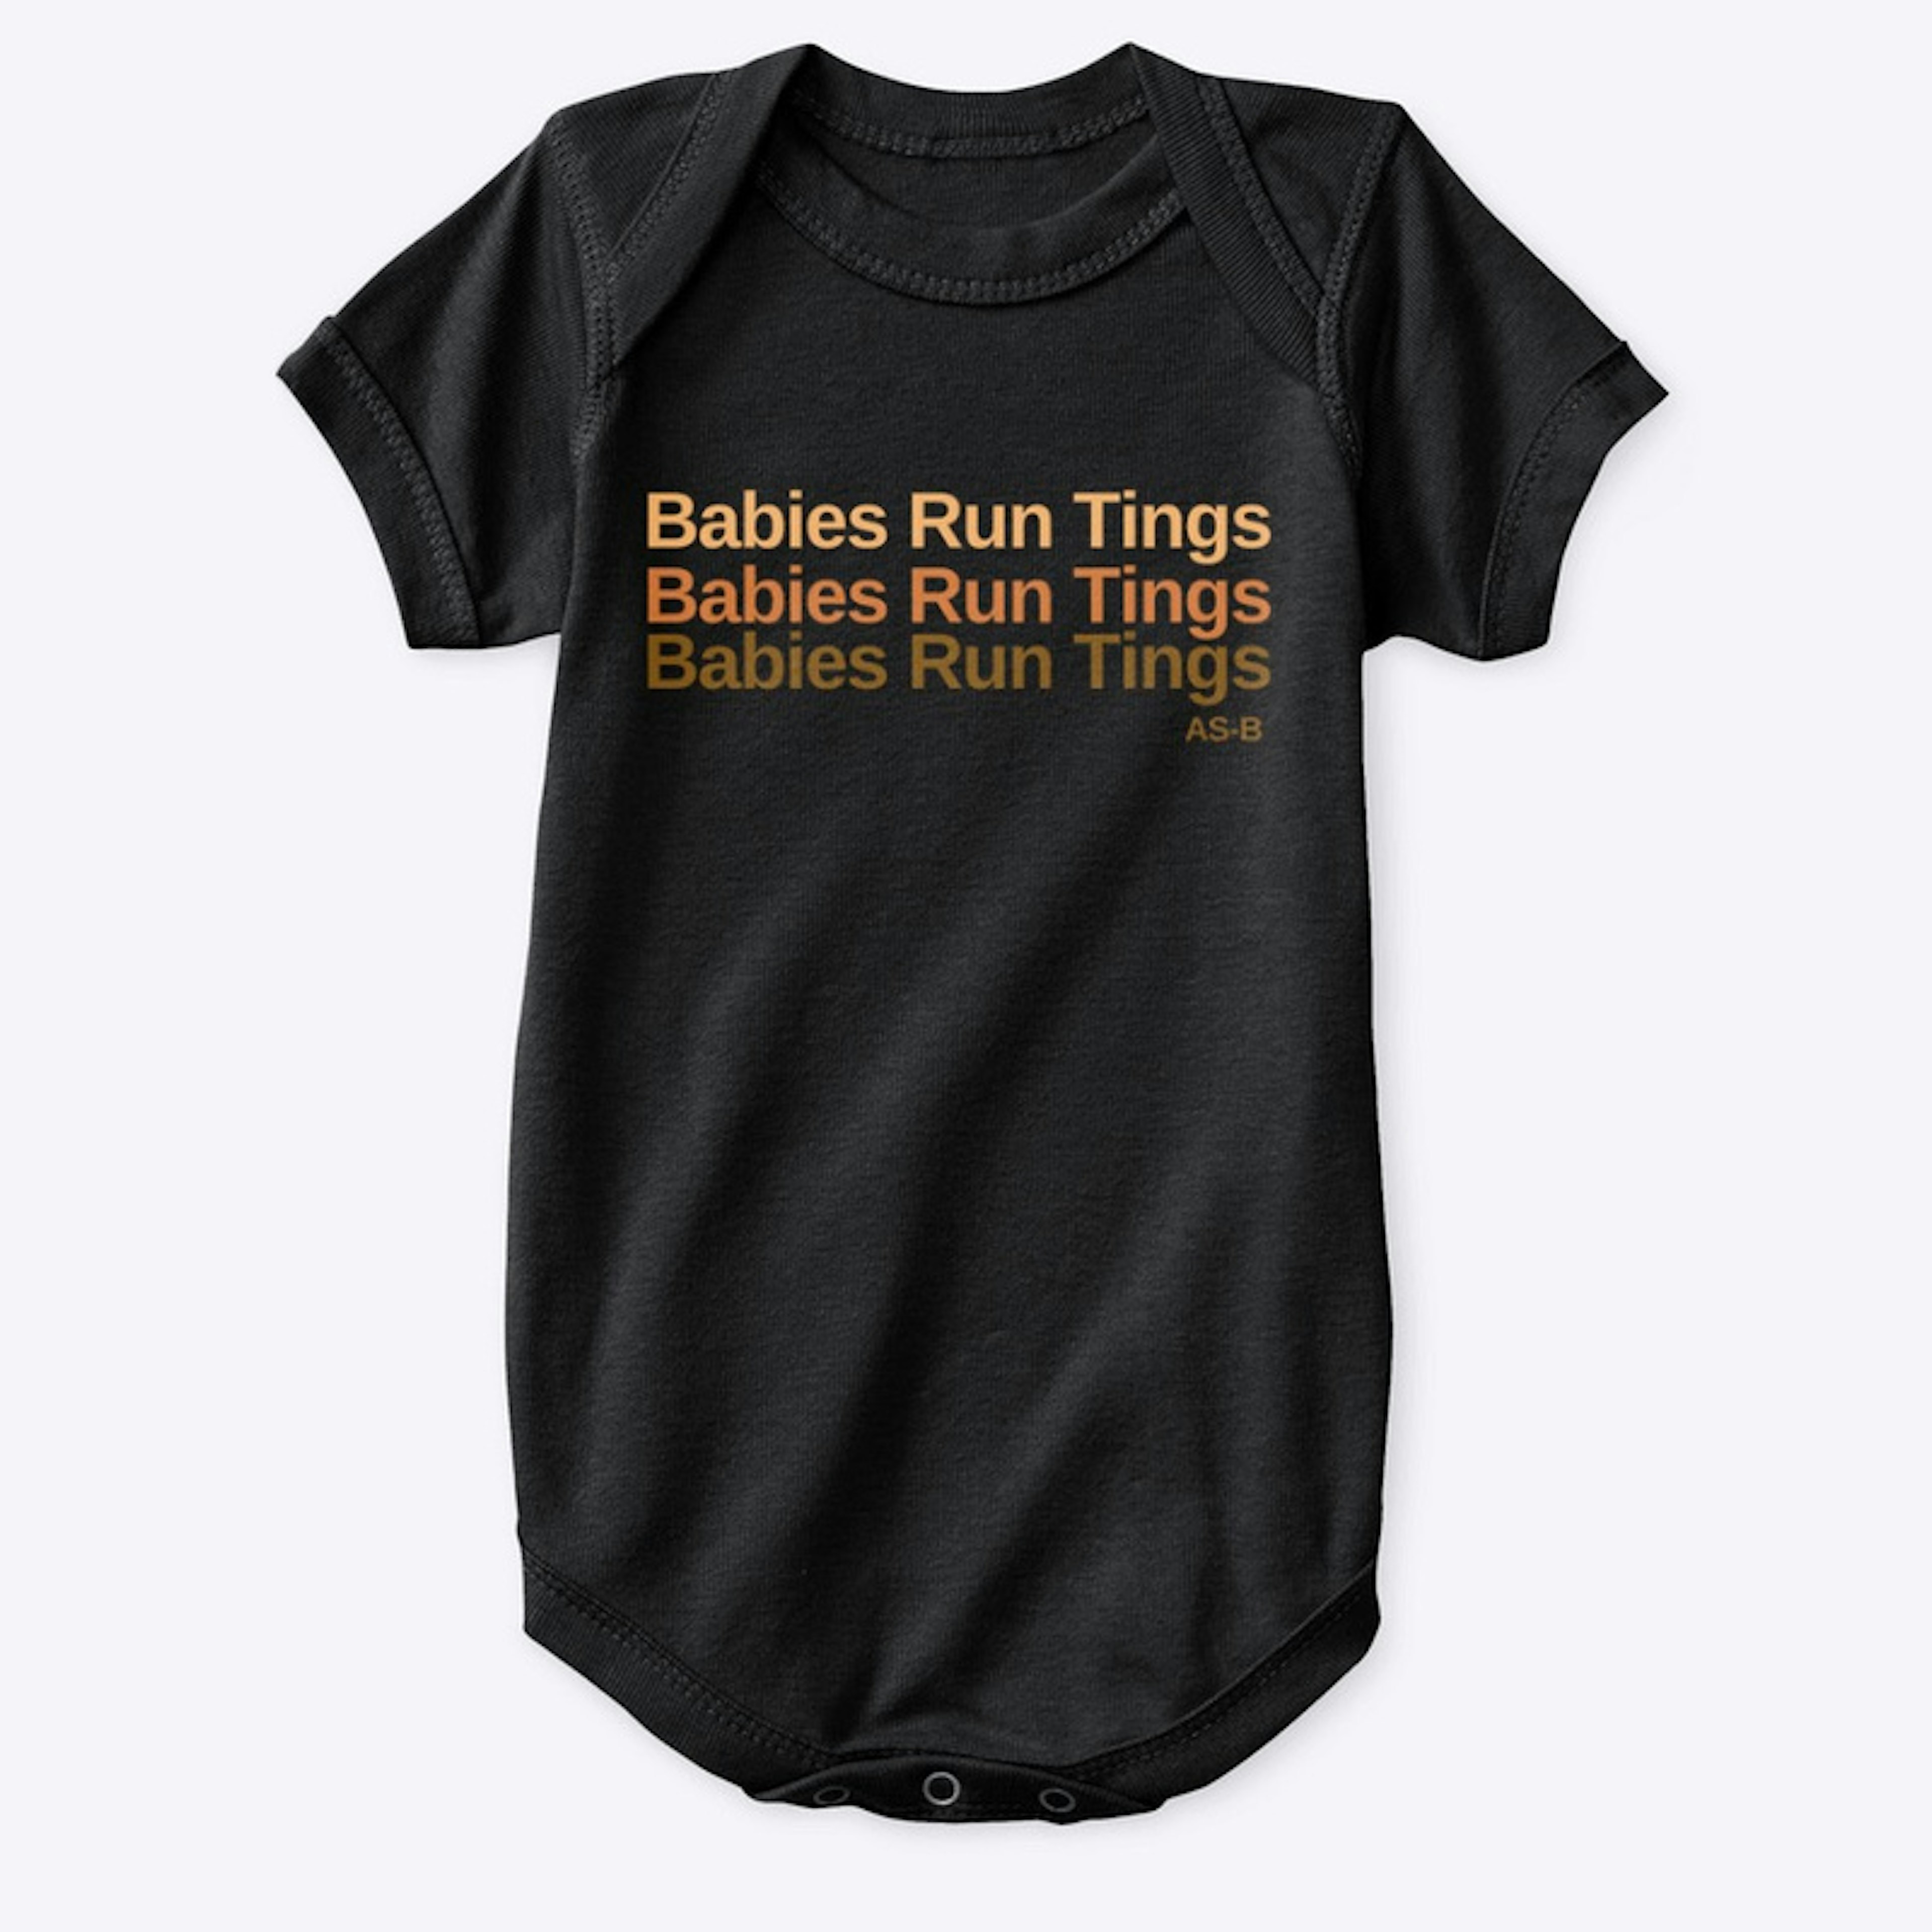 Babies run tings